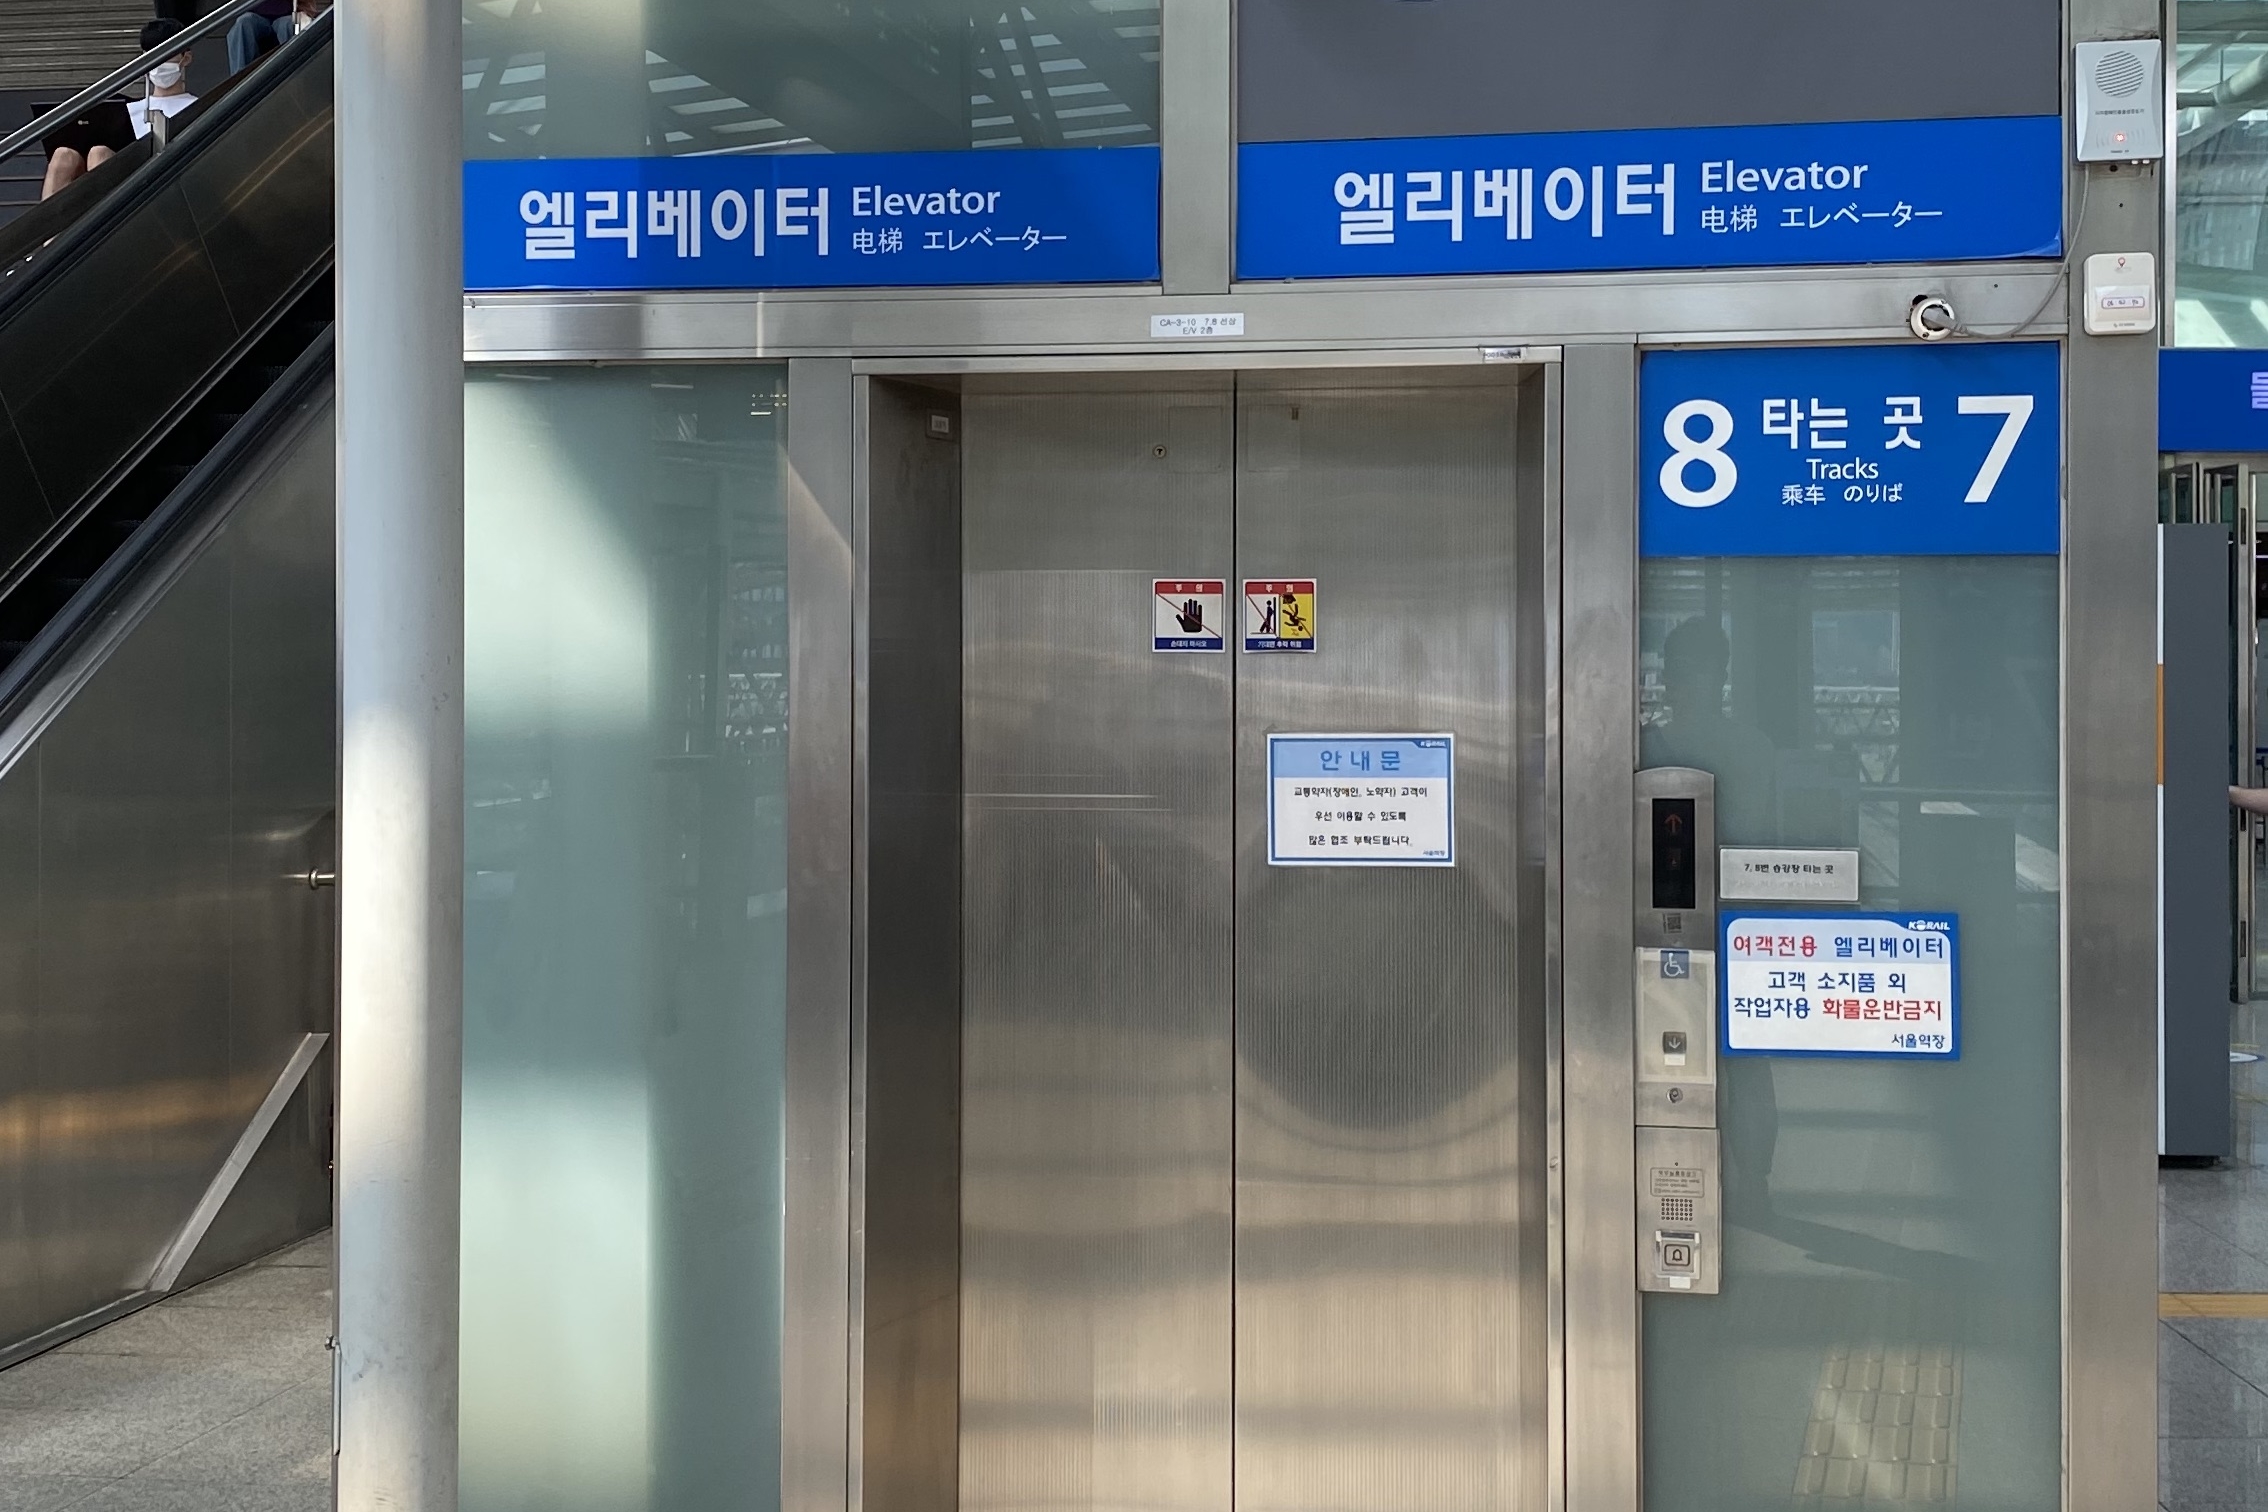 엘리베이터0 : 엘리베이터로 이용 가능해서 노약자, 장애인 등 접근성 우수
